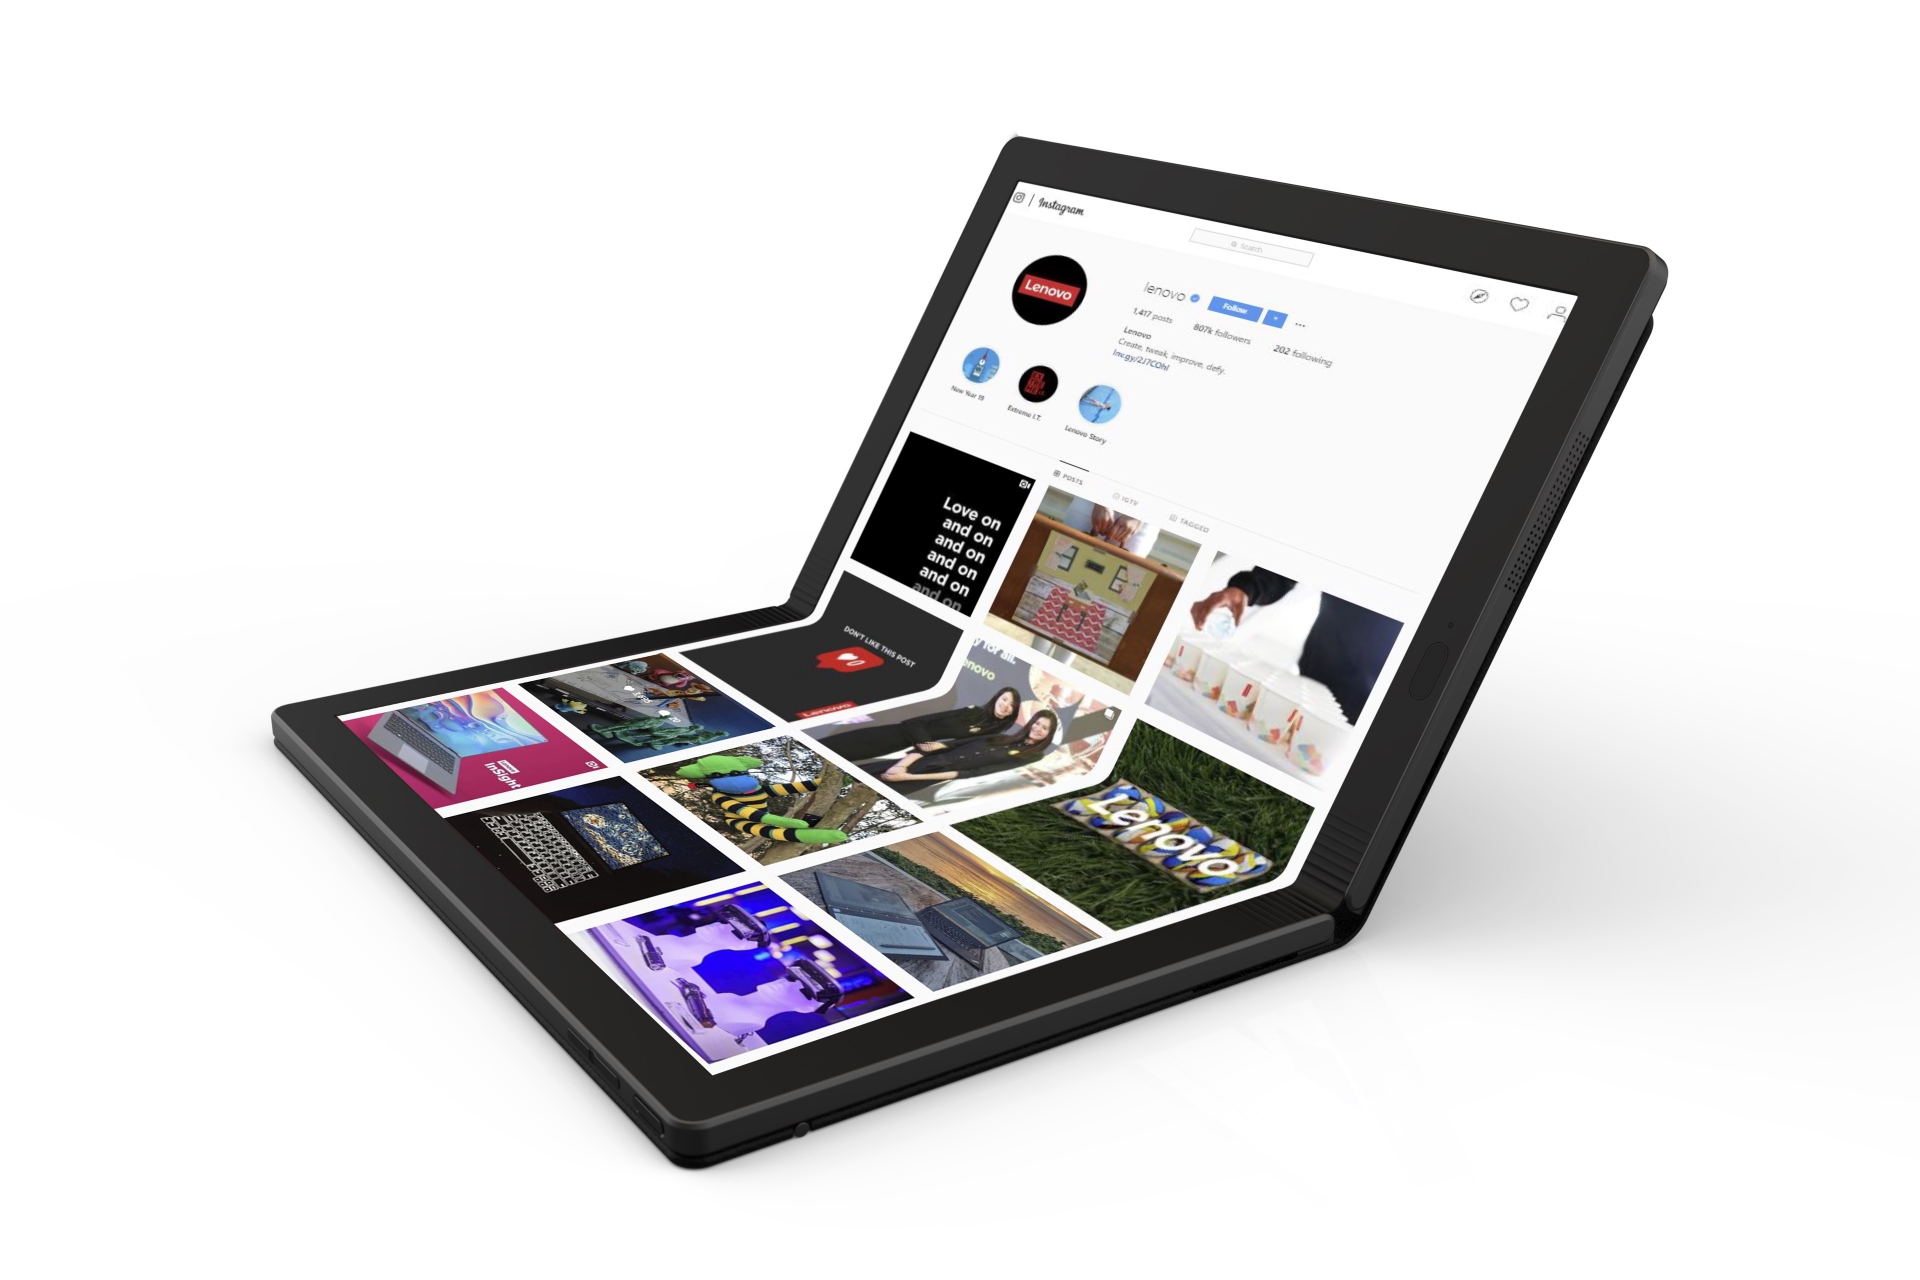 Lenovo เผยวิดีโอดีไซน์ พีซีจอพับได้รุ่นแรกของโลก “ThinkPad X1”